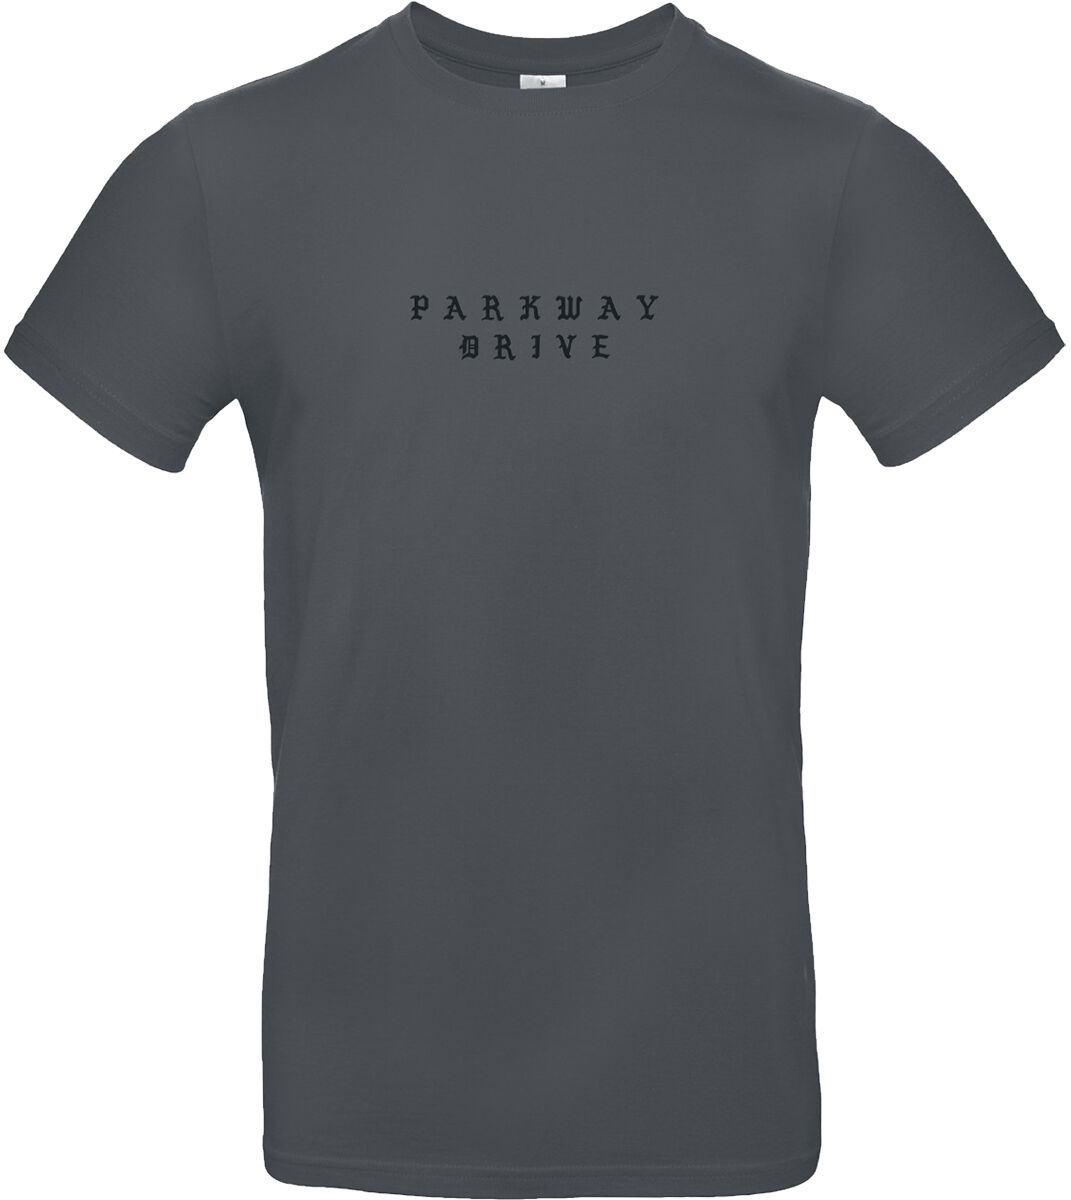 Parkway Drive T-Shirt - Glitch - S bis XXL - für Männer - Größe S - charcoal  - Lizenziertes Merchandise!